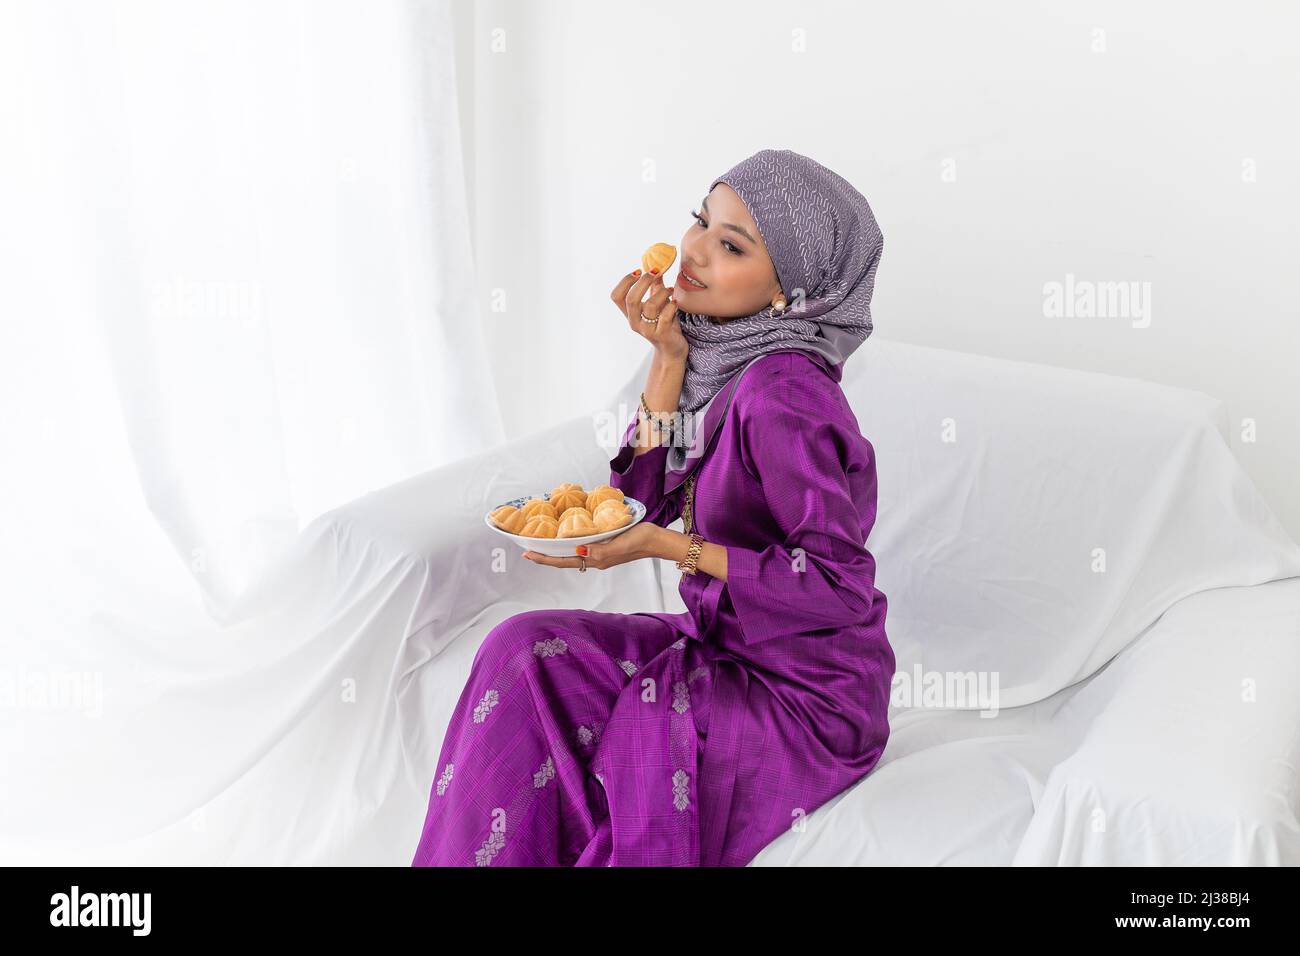 Eine junge malaiische Dame mit Hijab-Kopfbedeckung feiert das Ende des Ramadan, bekleidet mit purpurpurem Kebaya-Kleid, mit traditionellem Bahulu-Kuchen, die Hüfte nach oben Stockfoto